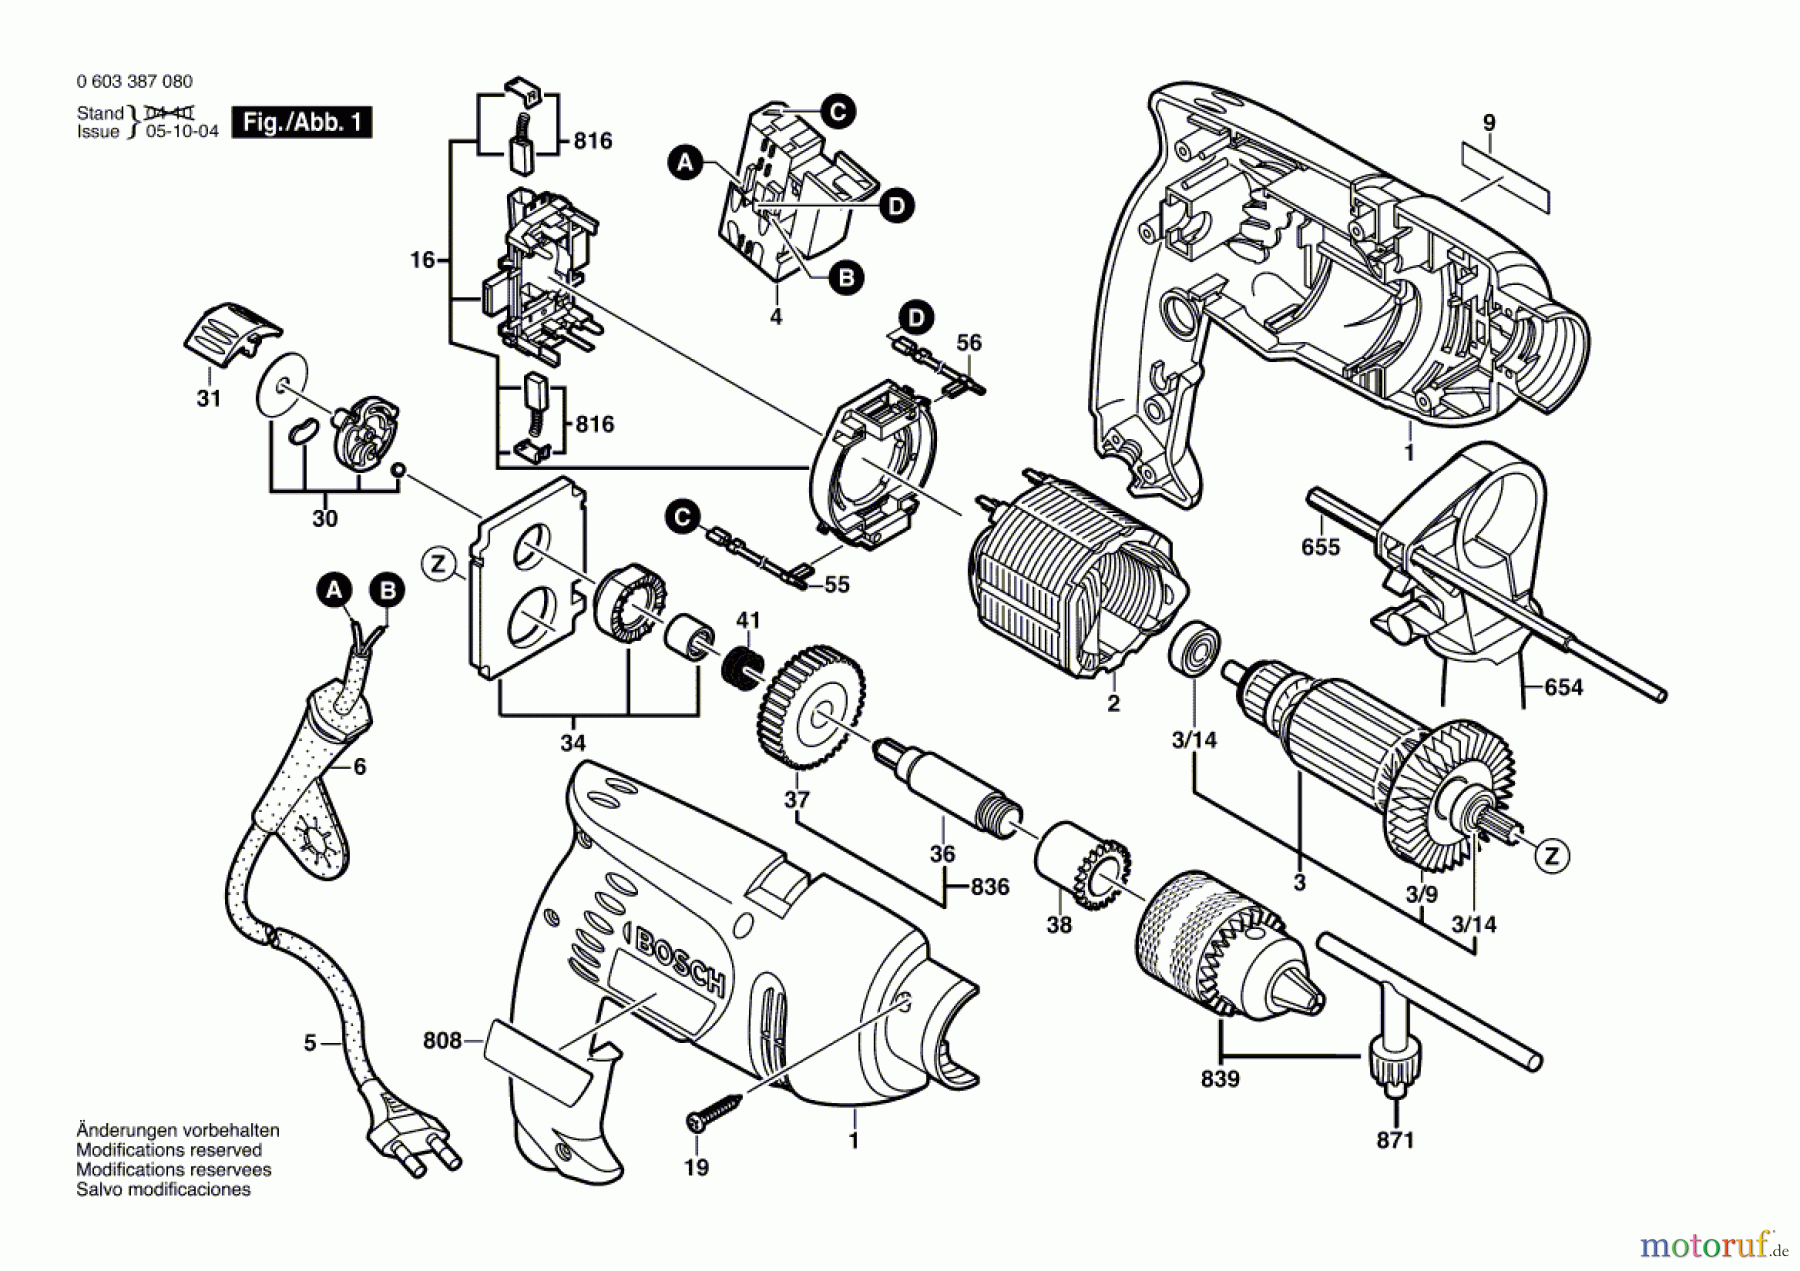  Bosch Werkzeug Schlagbohrmaschine PSB 500-2 Seite 1